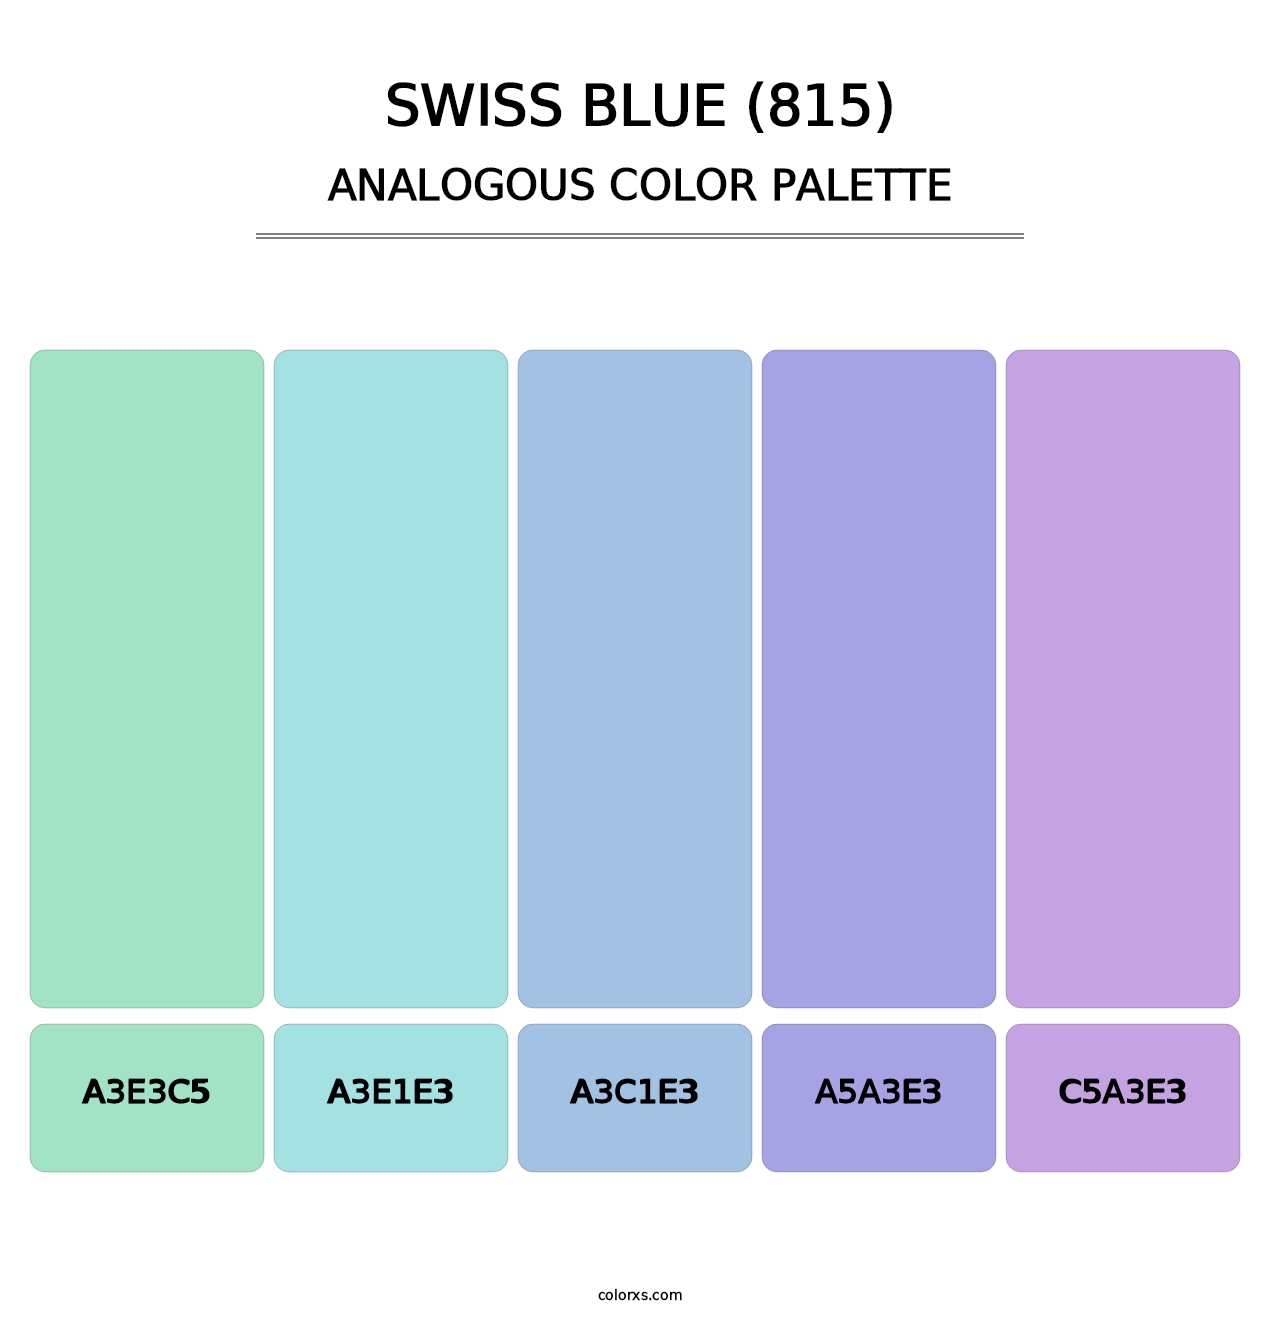 Swiss Blue (815) - Analogous Color Palette